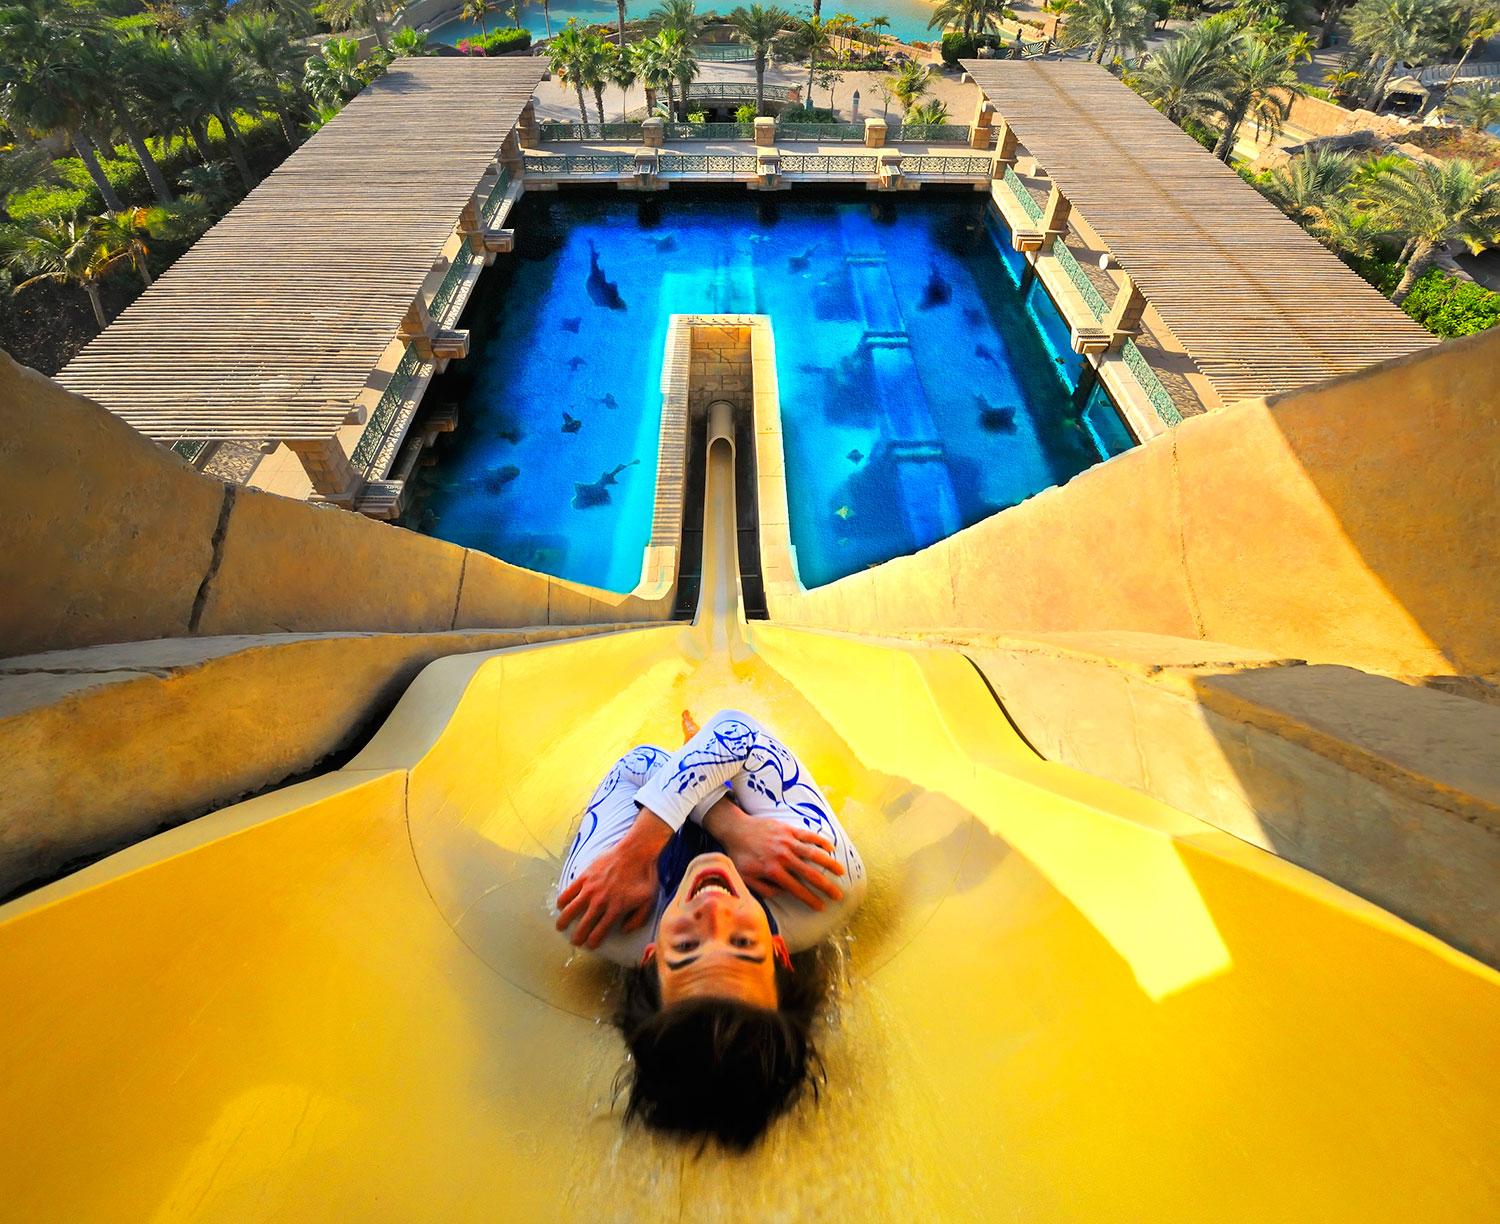 1. ATLANTIS THE PALM, DUBAI, FÖRENADE ARABEMIRATEN Det femstjärniga hotellet Atlantis The Palm ligger på den konstgjorda ön Palm Jumeirah i Dubai. Här kan du sova i undervattenssviter, äta på över 20 restauranger och bada i äventyrsbadet Aquaventure. Parkens mest kända attraktion är det pyramidformade Tower of Neptune, där man faller 30 meter och sedan färdas i genom en glastunnel omgiven av hajar. Hotellrum från cirka 2780 kr/natt.